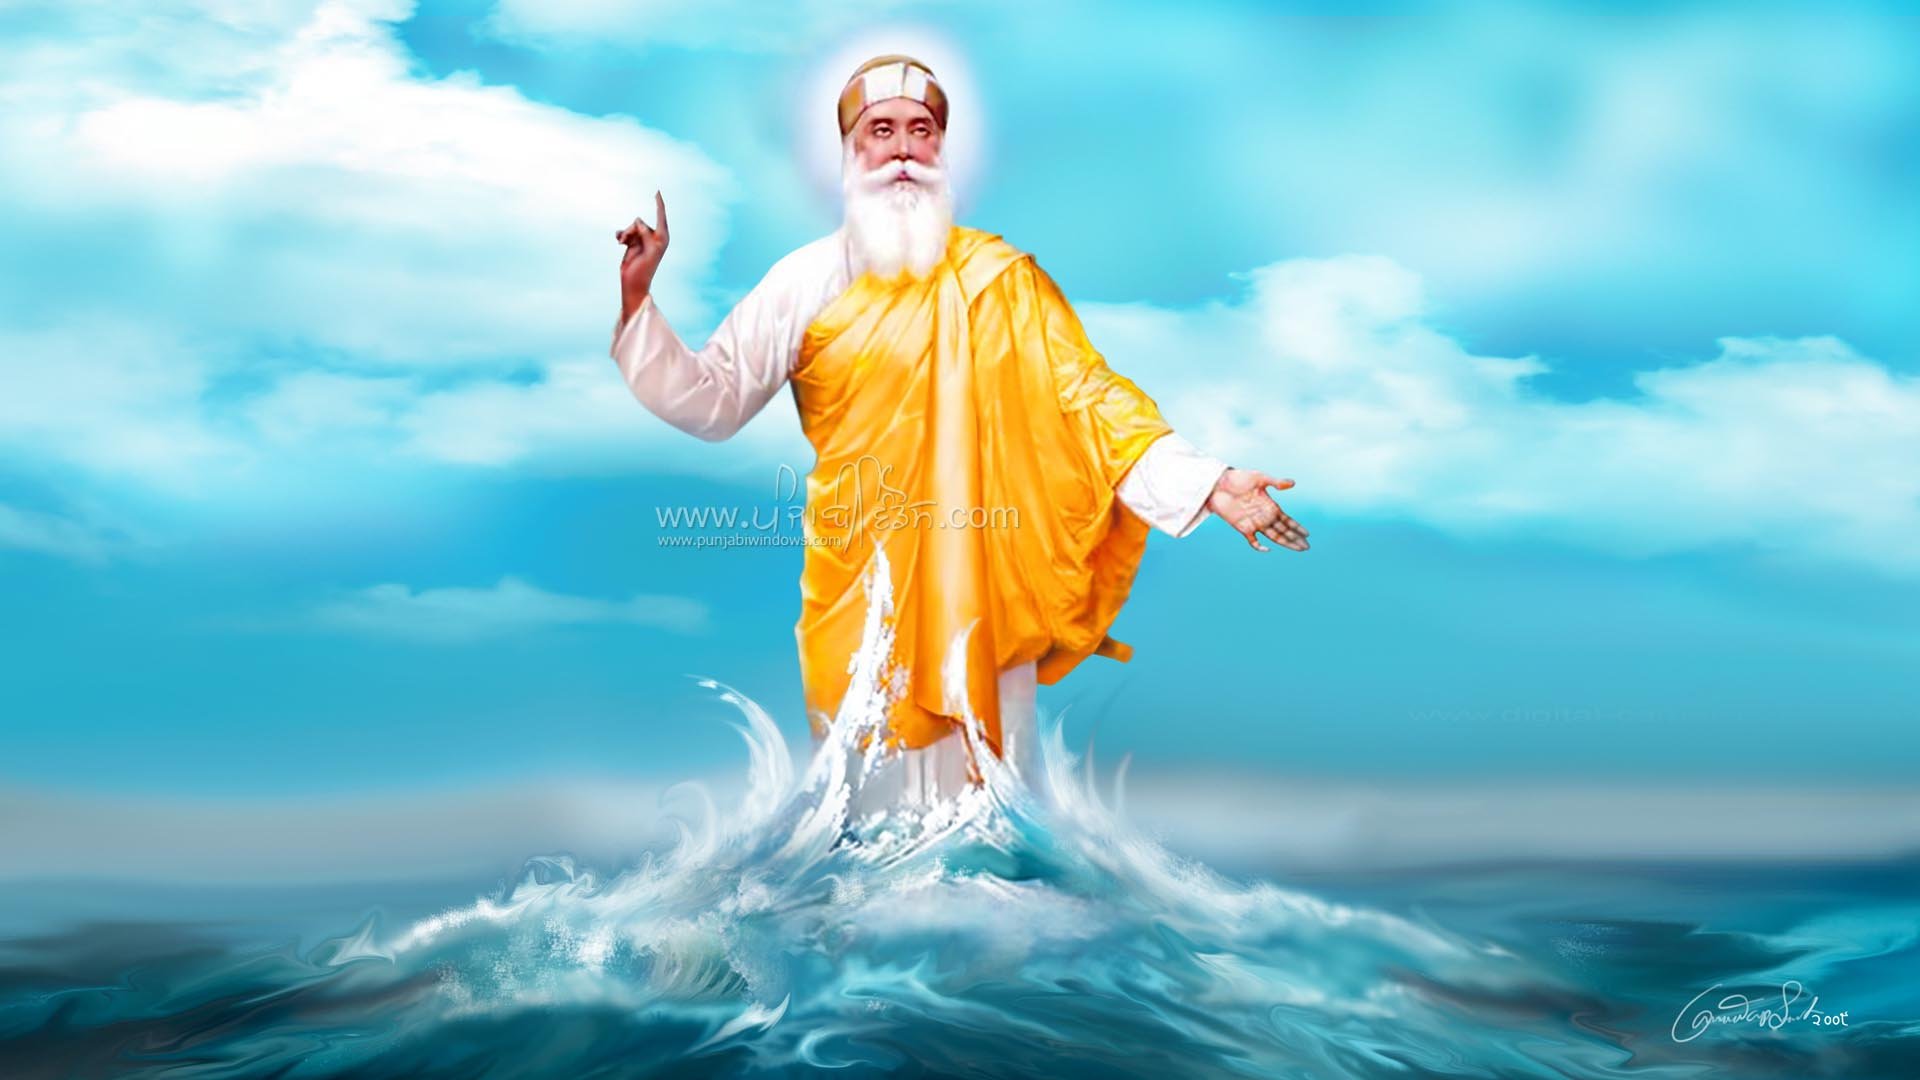 Guru Nanak Dev Ji Live Wallpaper - Guru Nanak Dev Ji Birthday 2018 , HD Wallpaper & Backgrounds